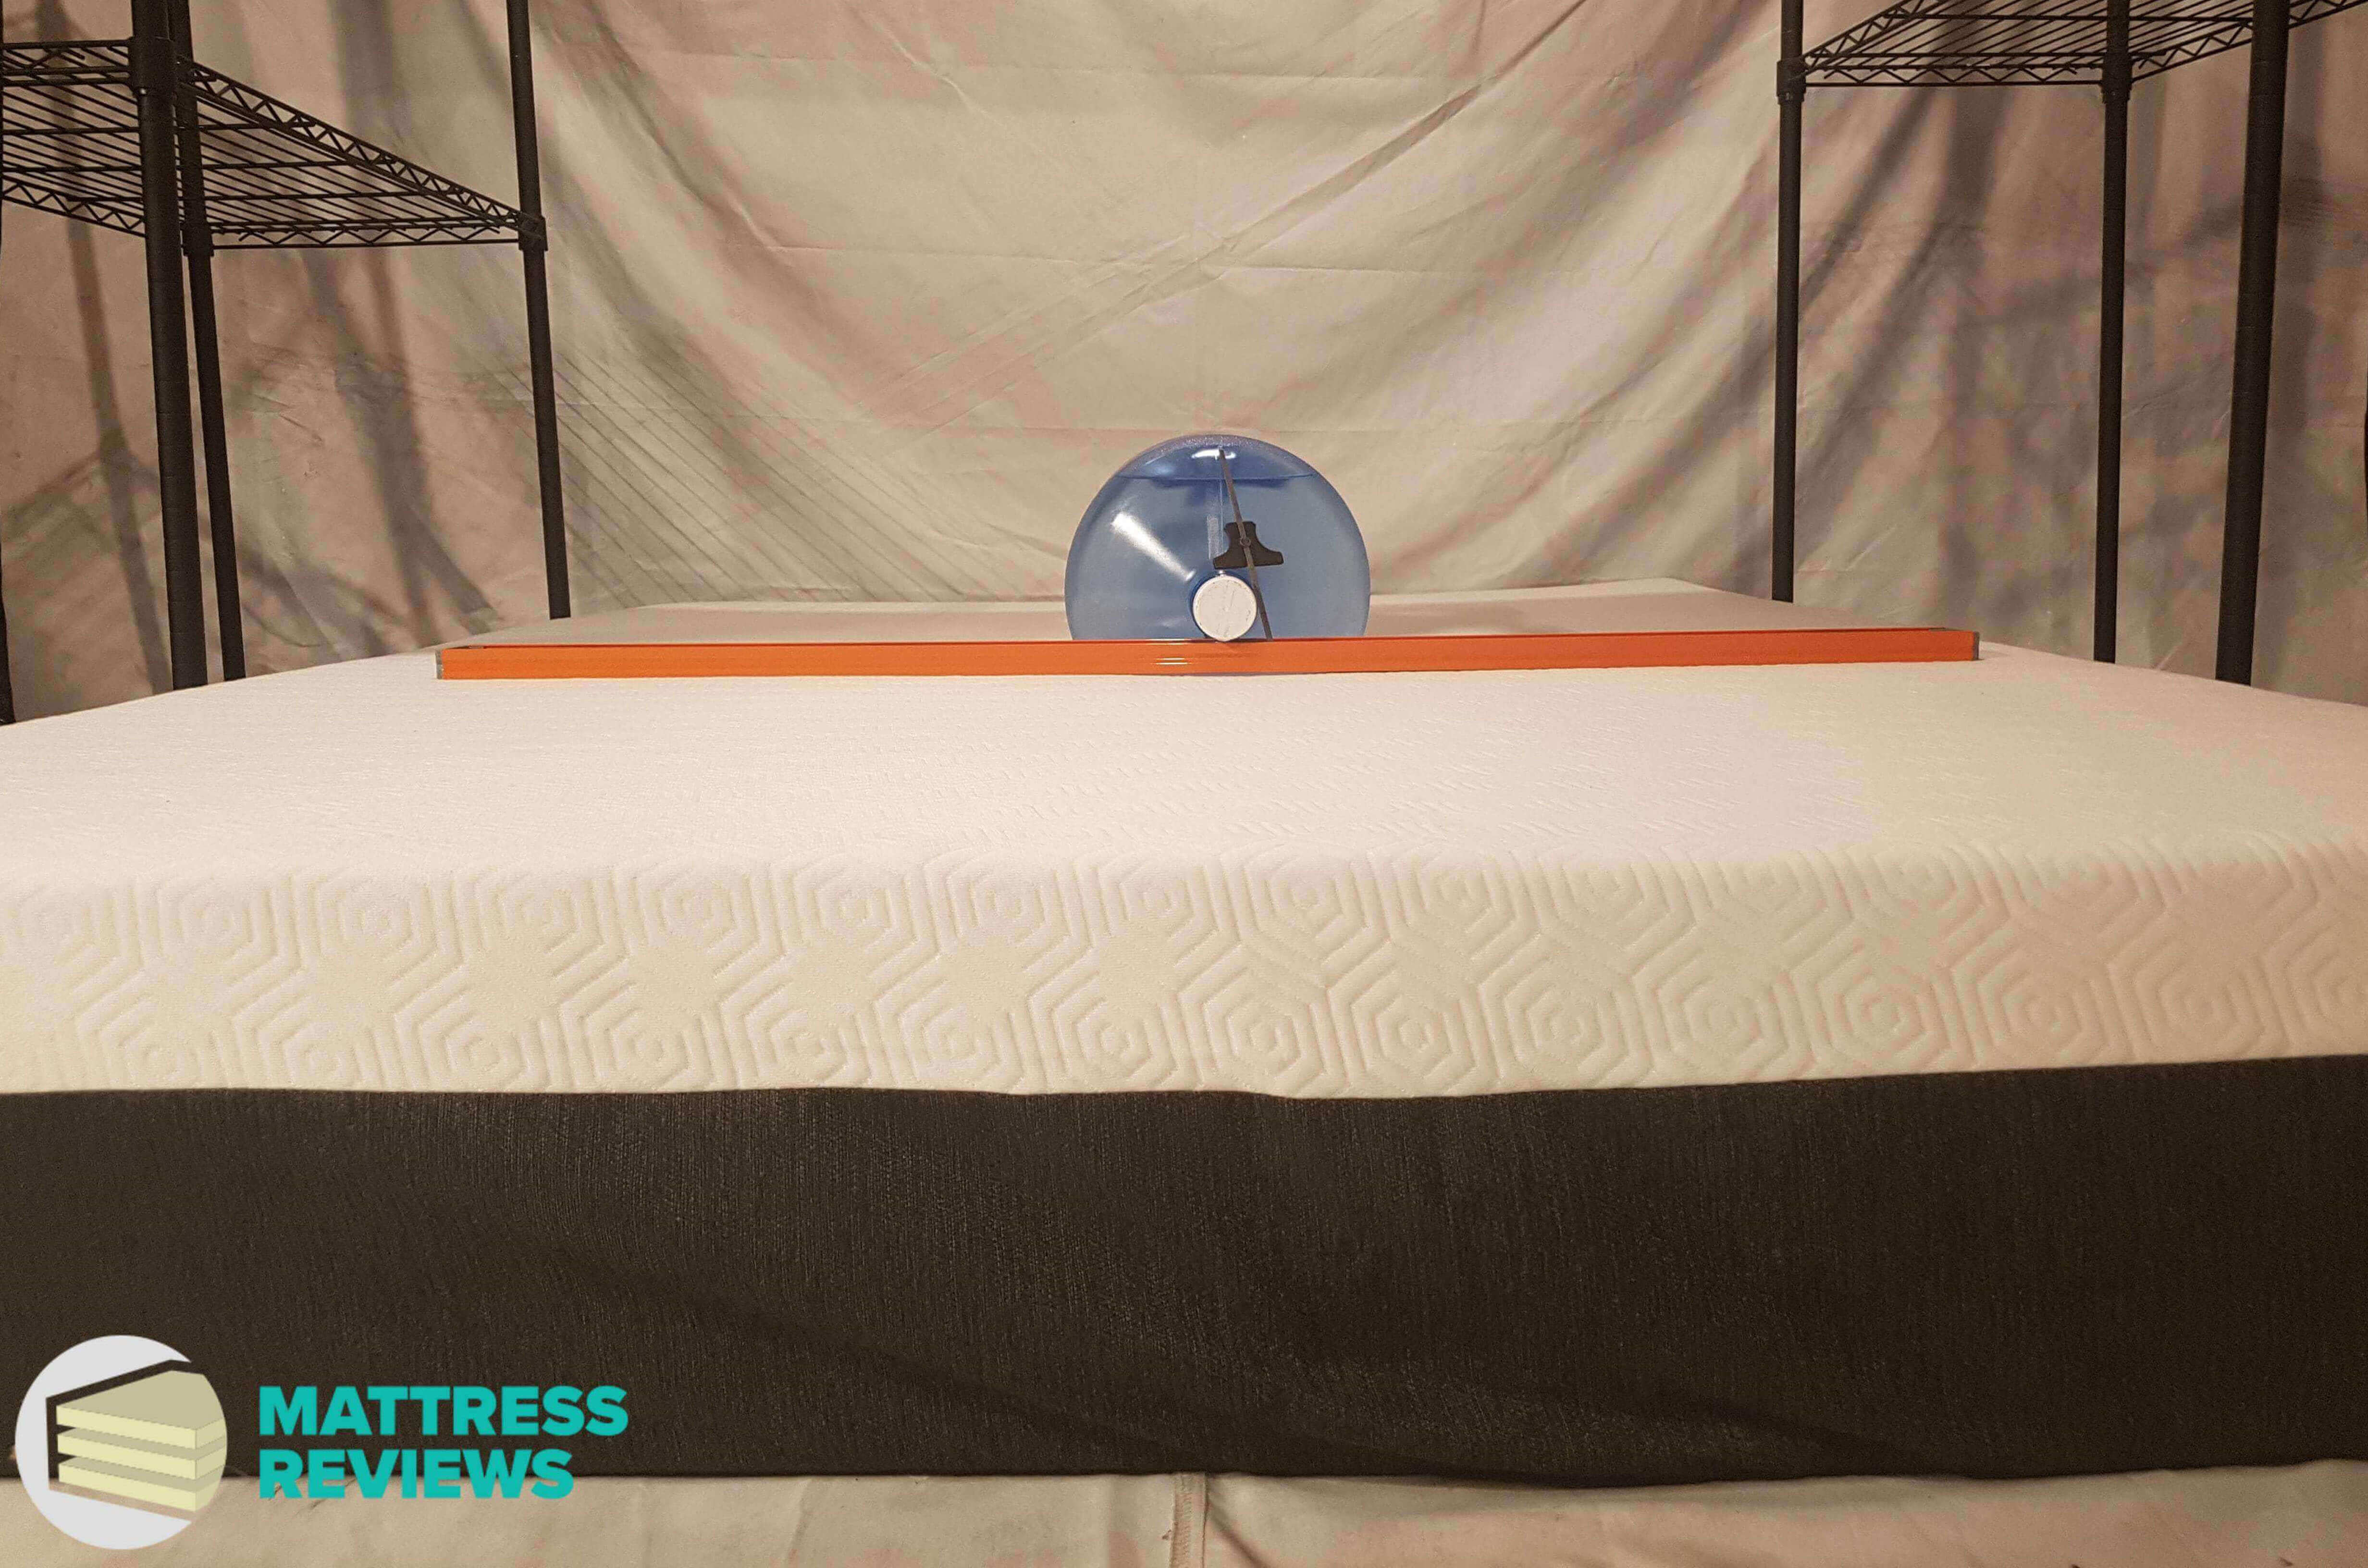 Image of the Bear mattress firmness test.